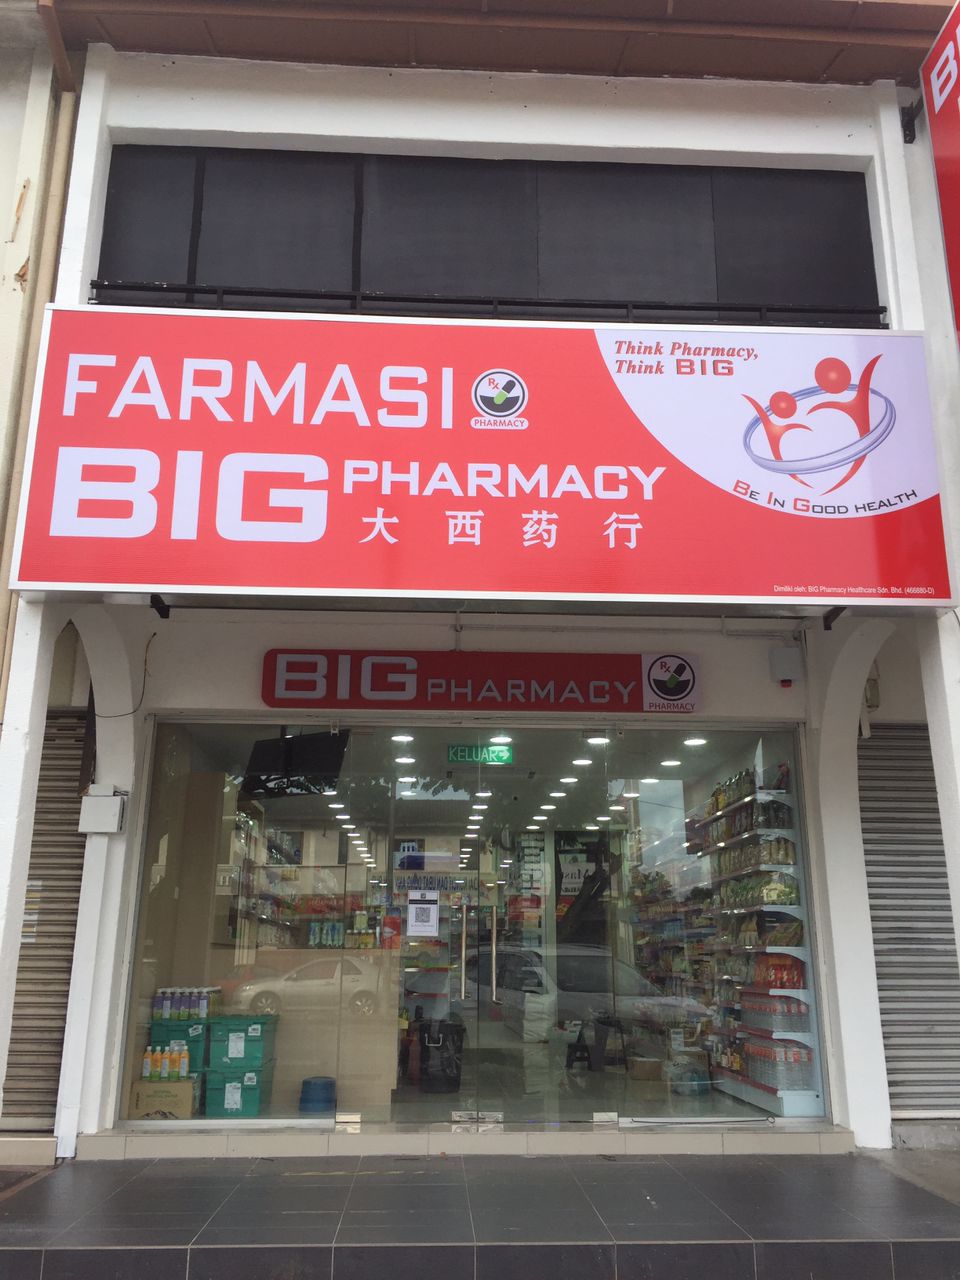 Big pharmacy selayang jaya